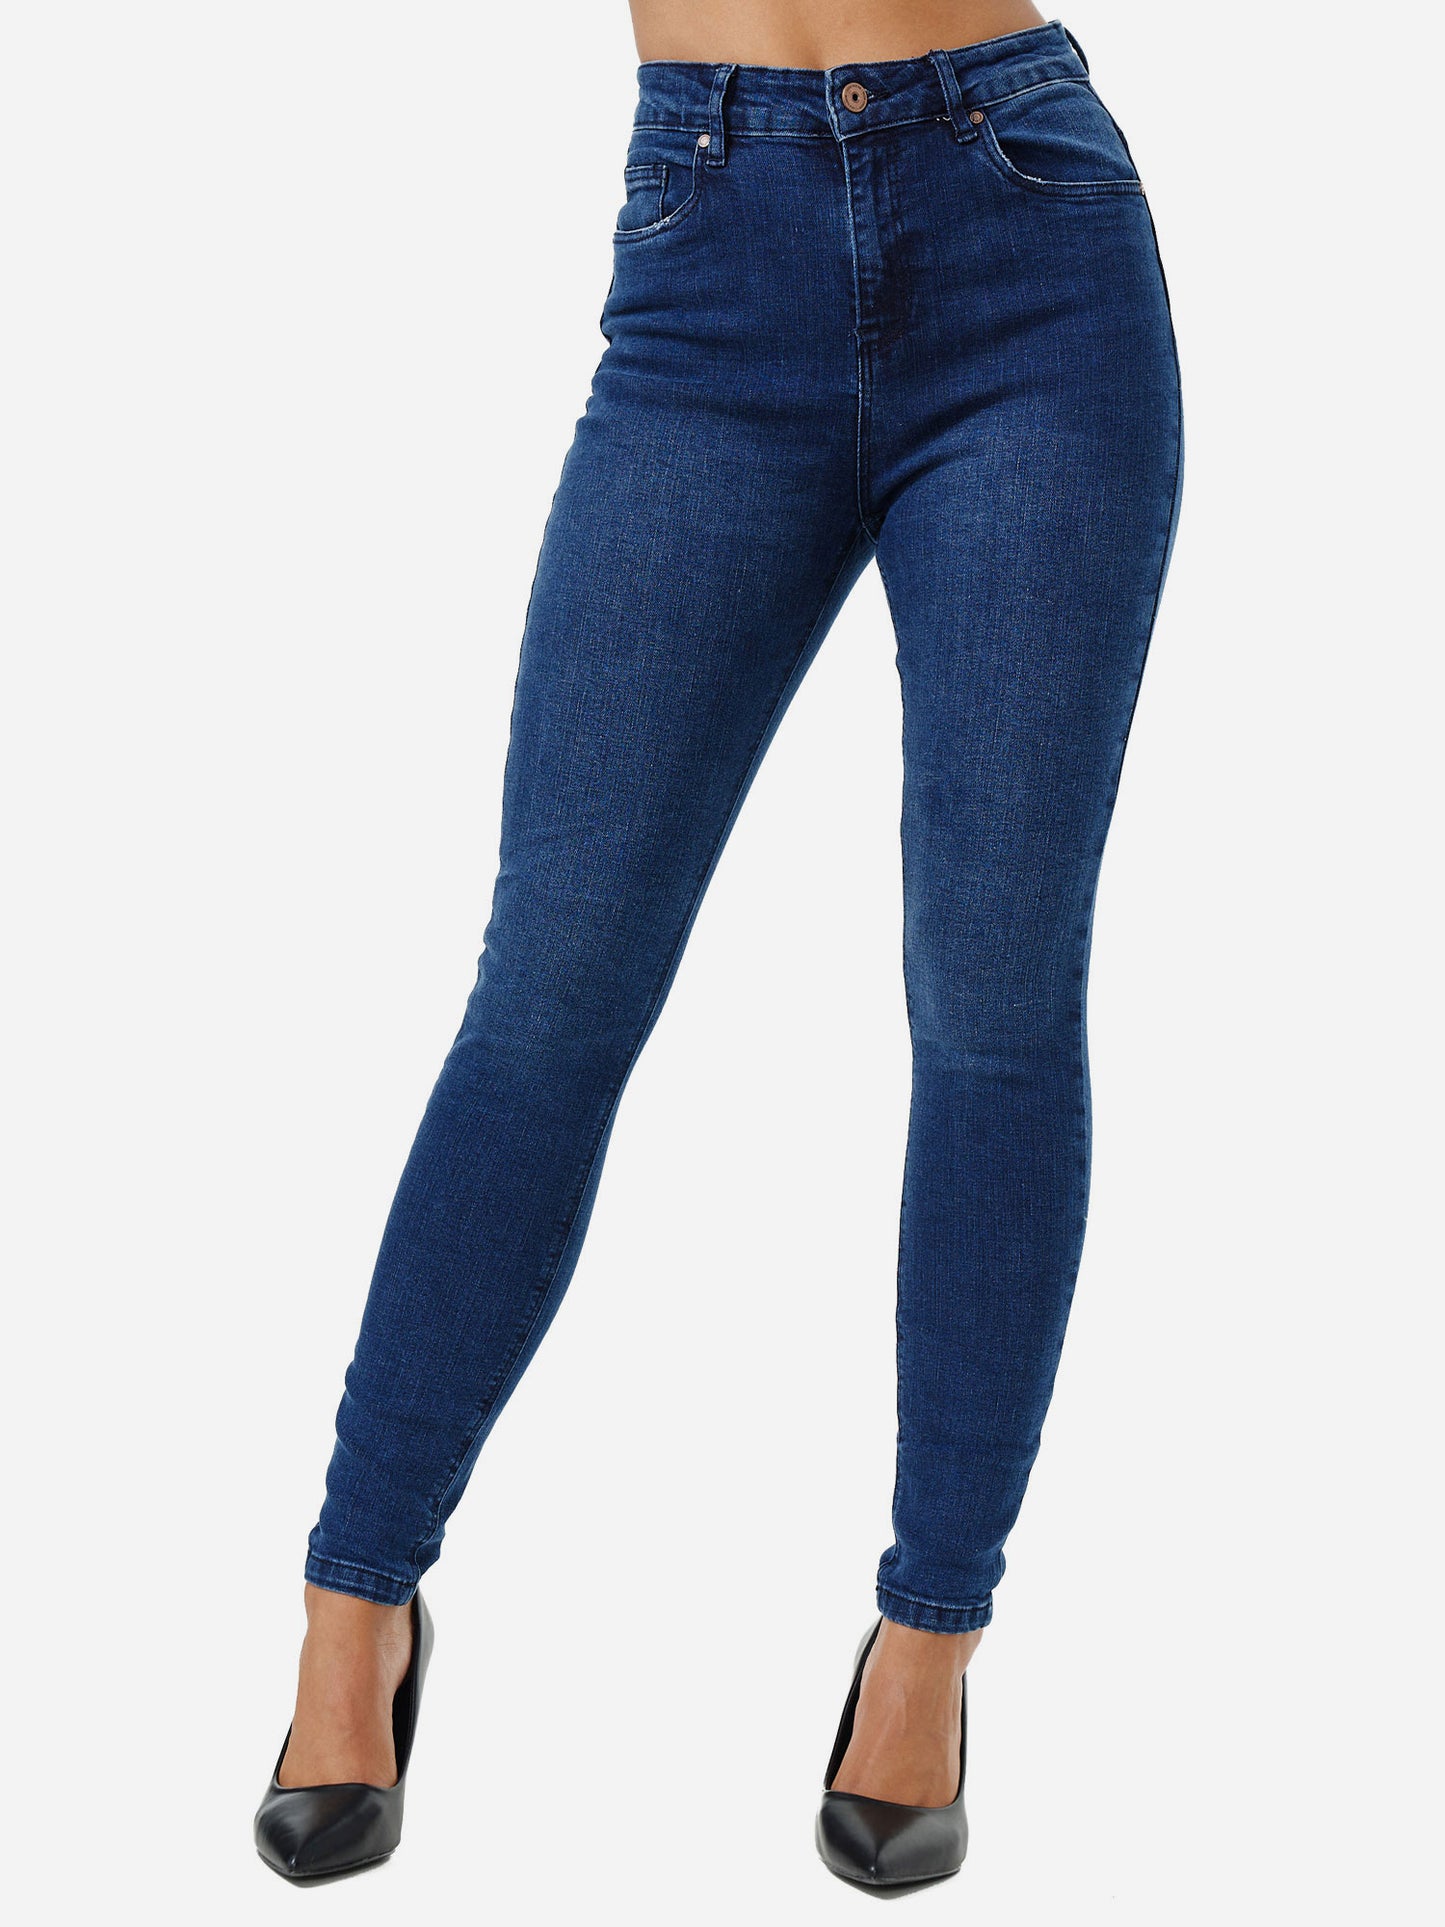 Tazzio Damen Skinny Fit High Waist Jeans F101